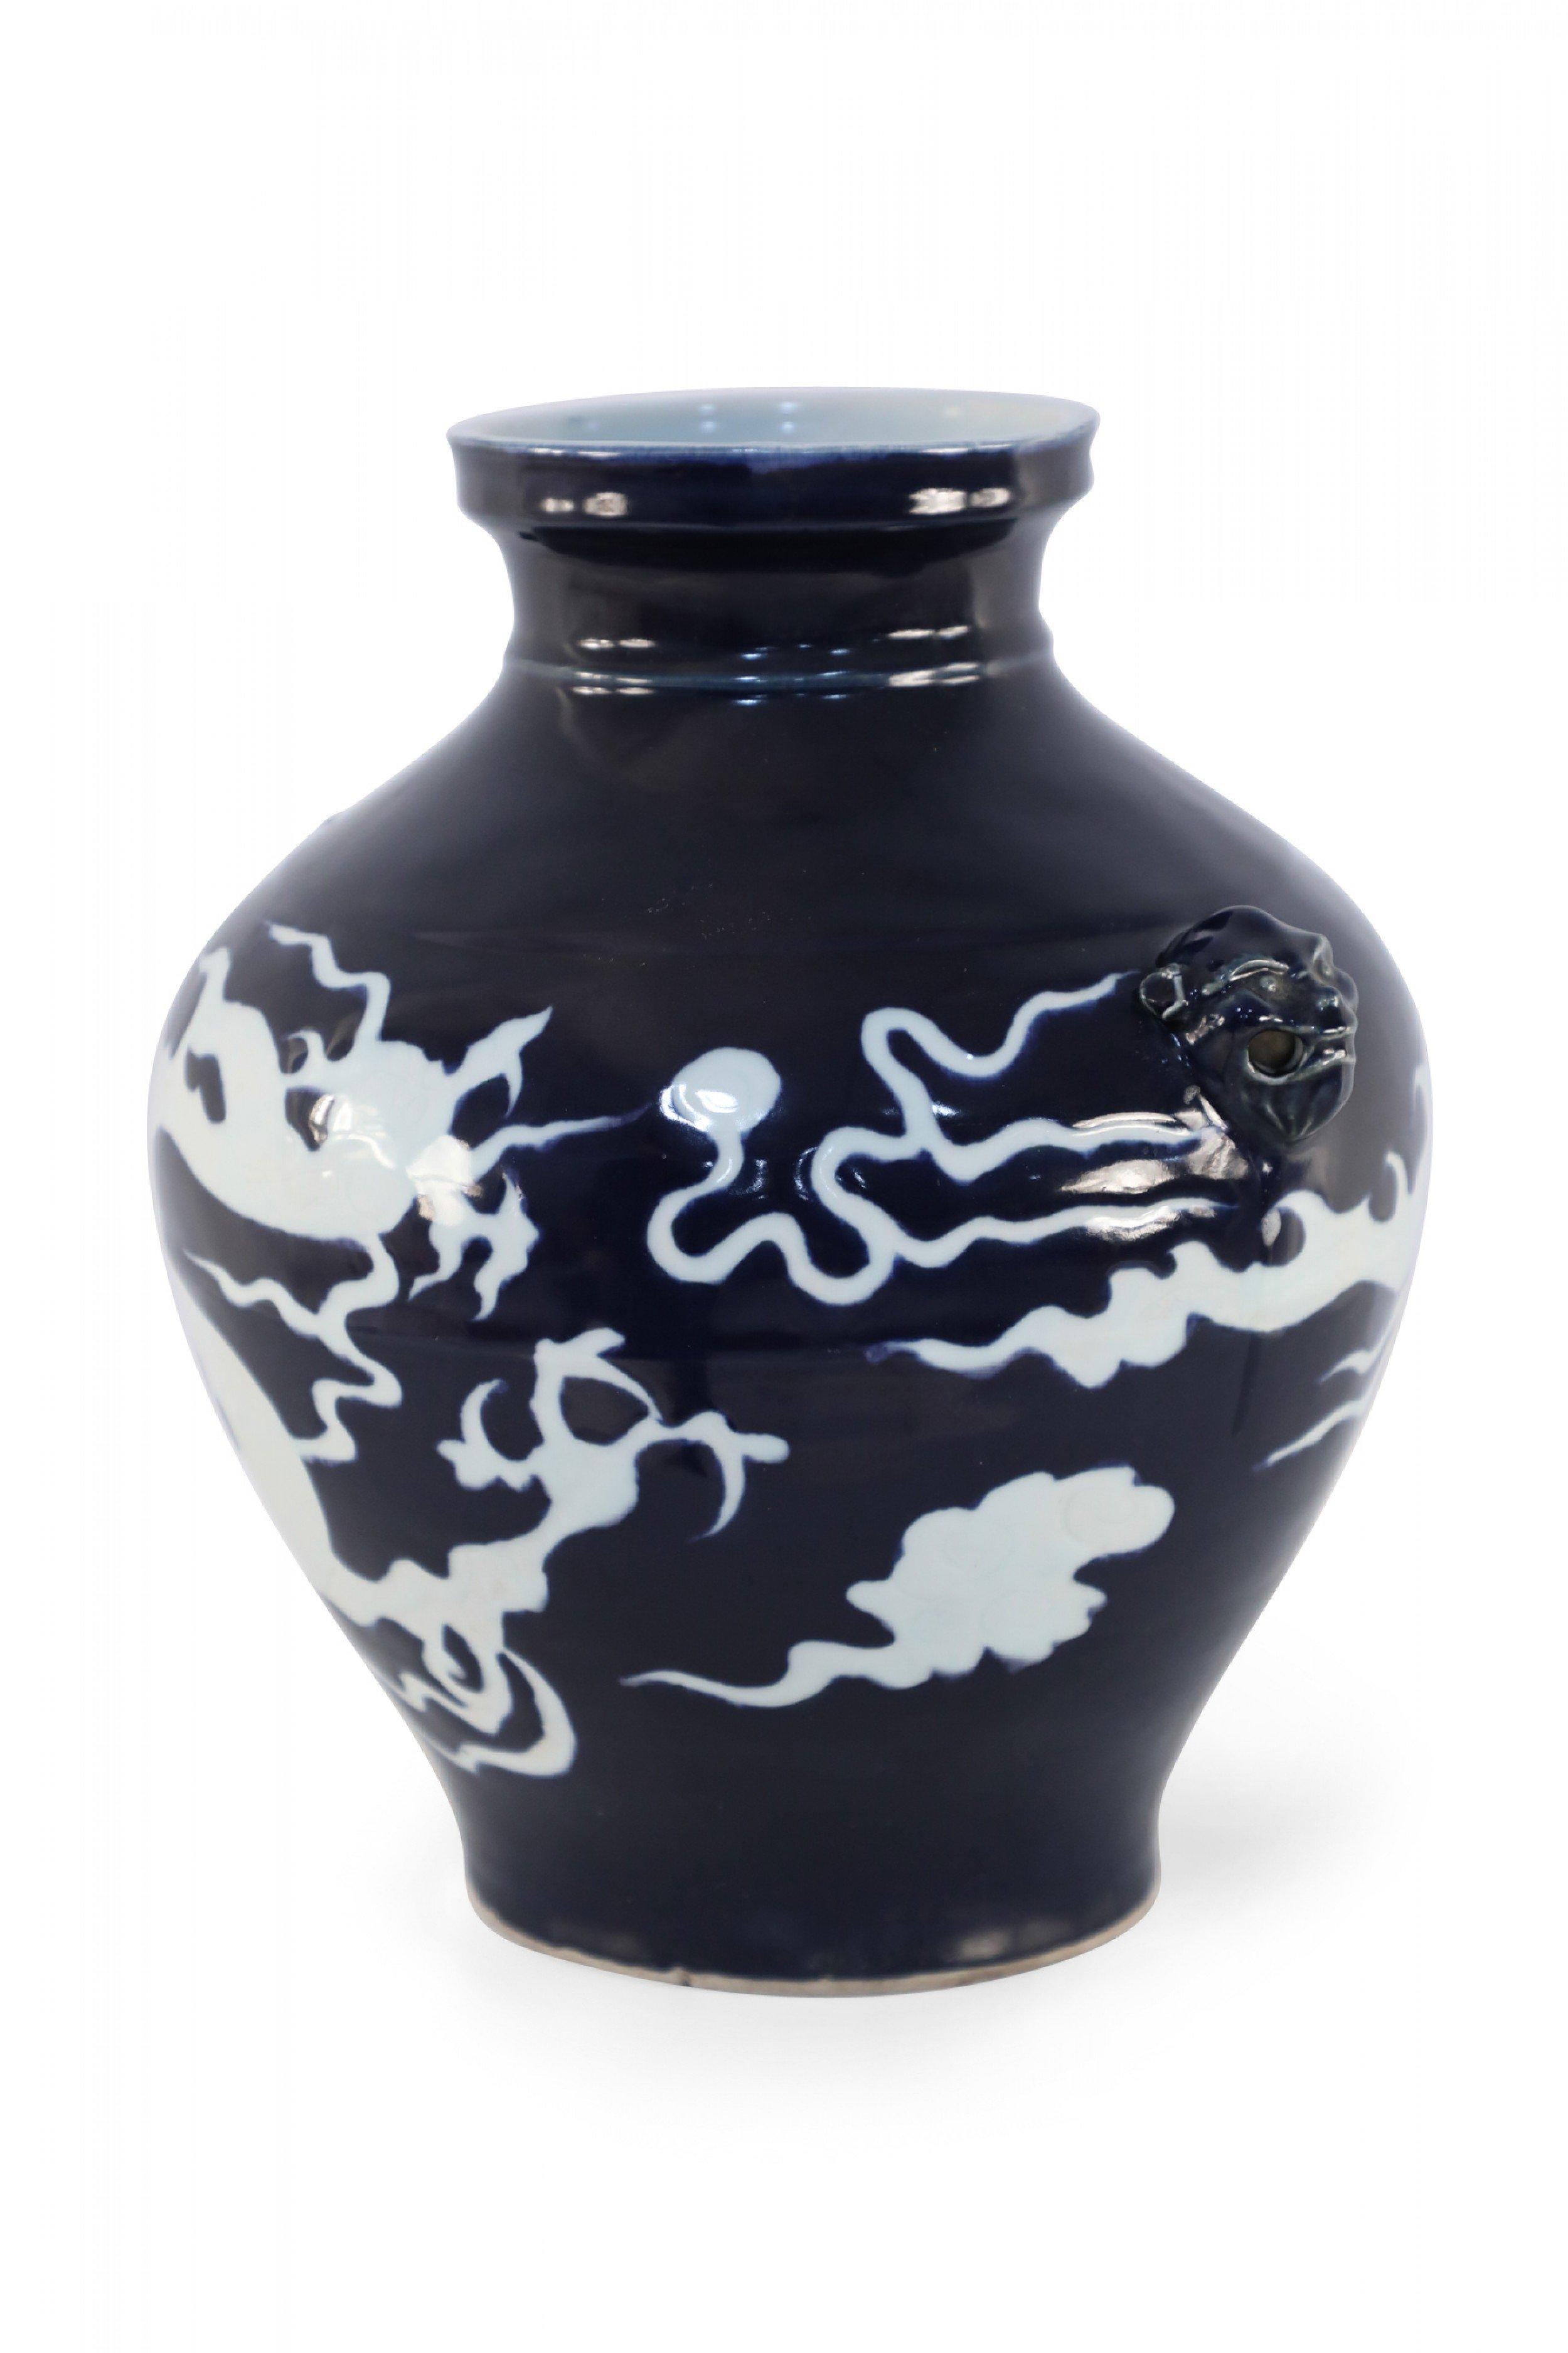 Chinesische bauchige, dunkelblaue Porzellankanne im Stil der Yuan-Dynastie, umhüllt von der dynamischen weißen Form eines Drachens und akzentuiert mit Foo Dog-Ornamenten an den Seiten.
  